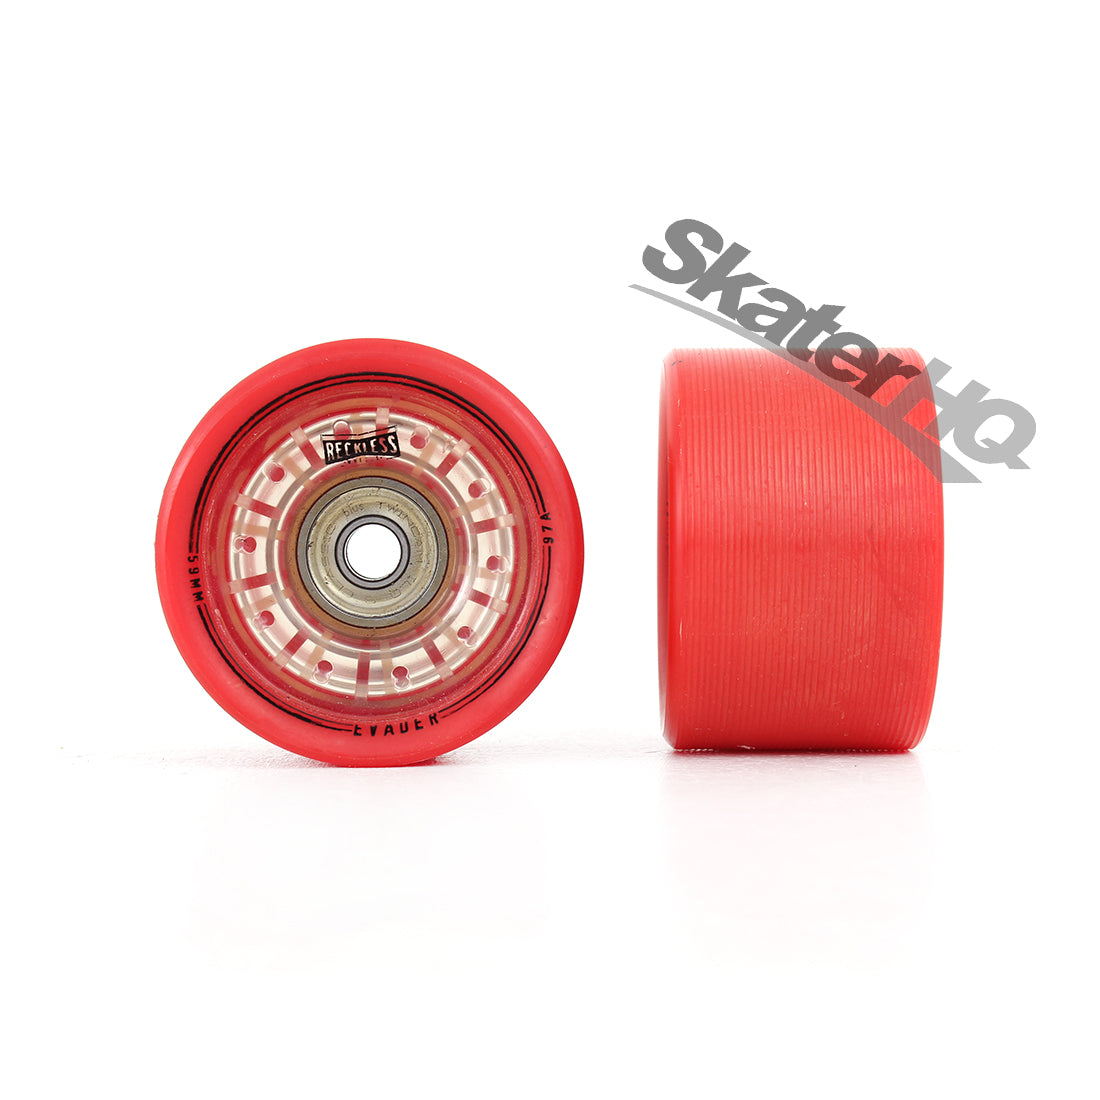 Reckless Evader 59mm/97A Red 4pk Roller Skate Wheels